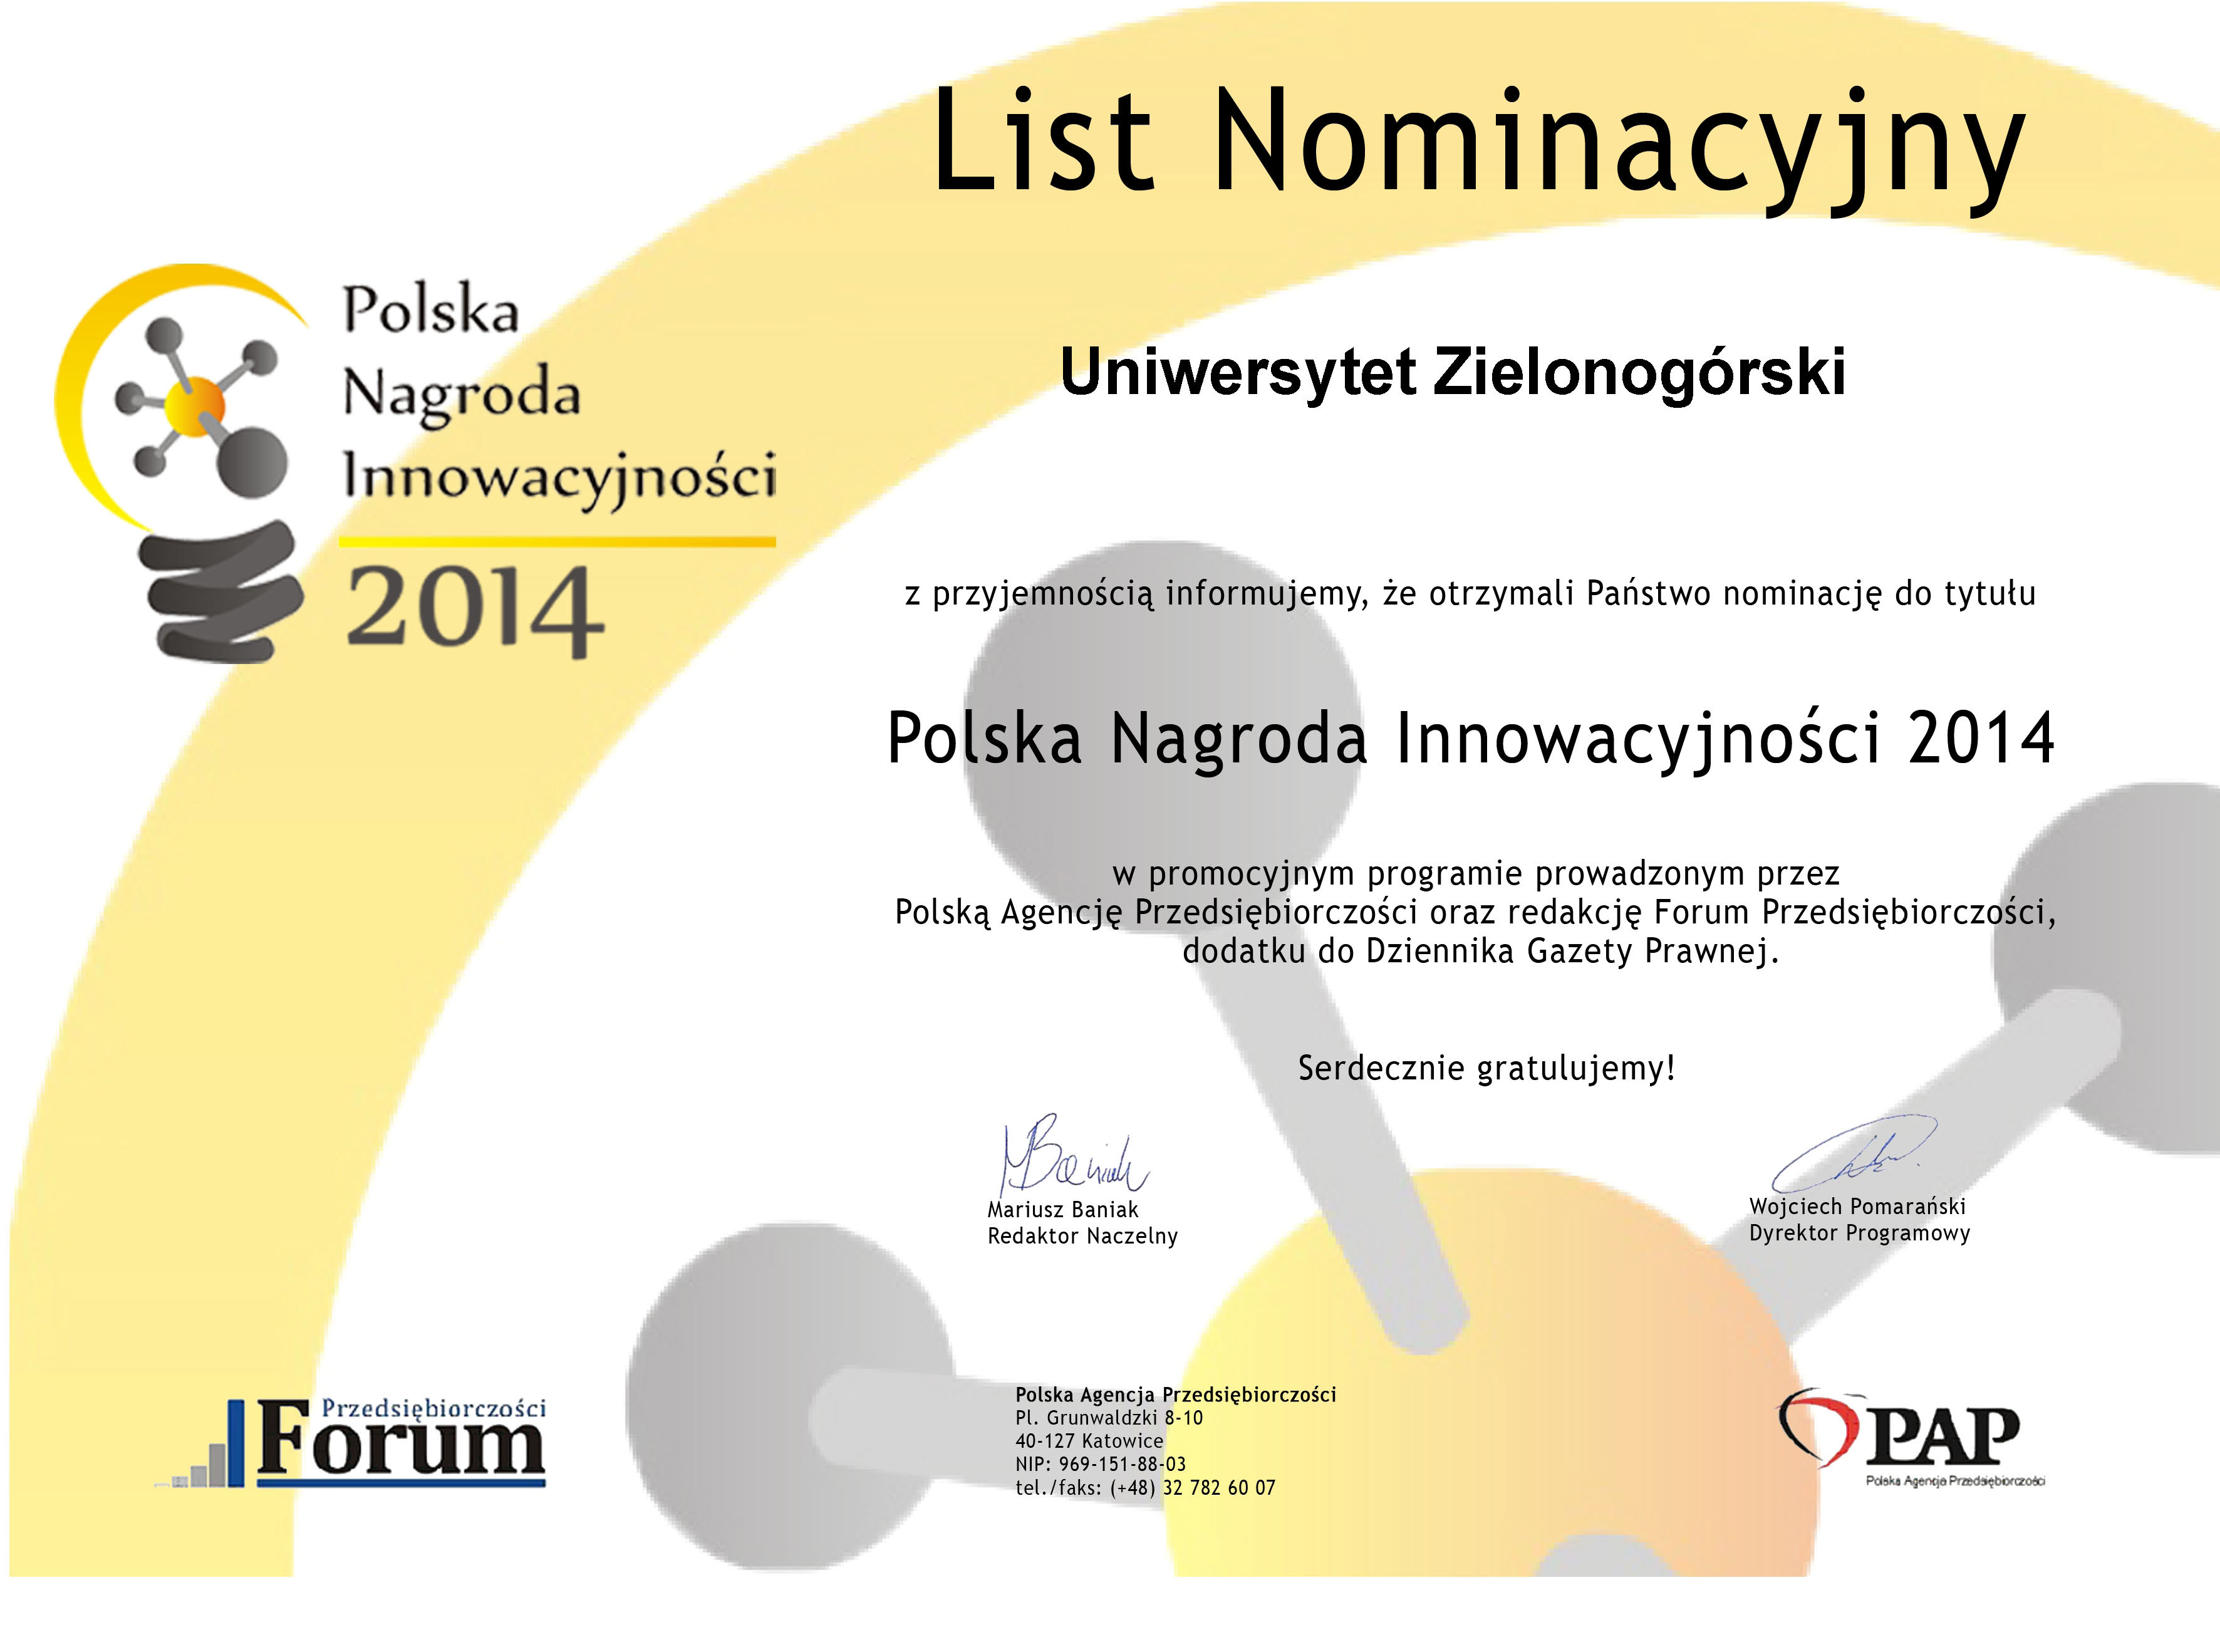 List nominacyjny - Uniwersytet Zielonogórski.jpg